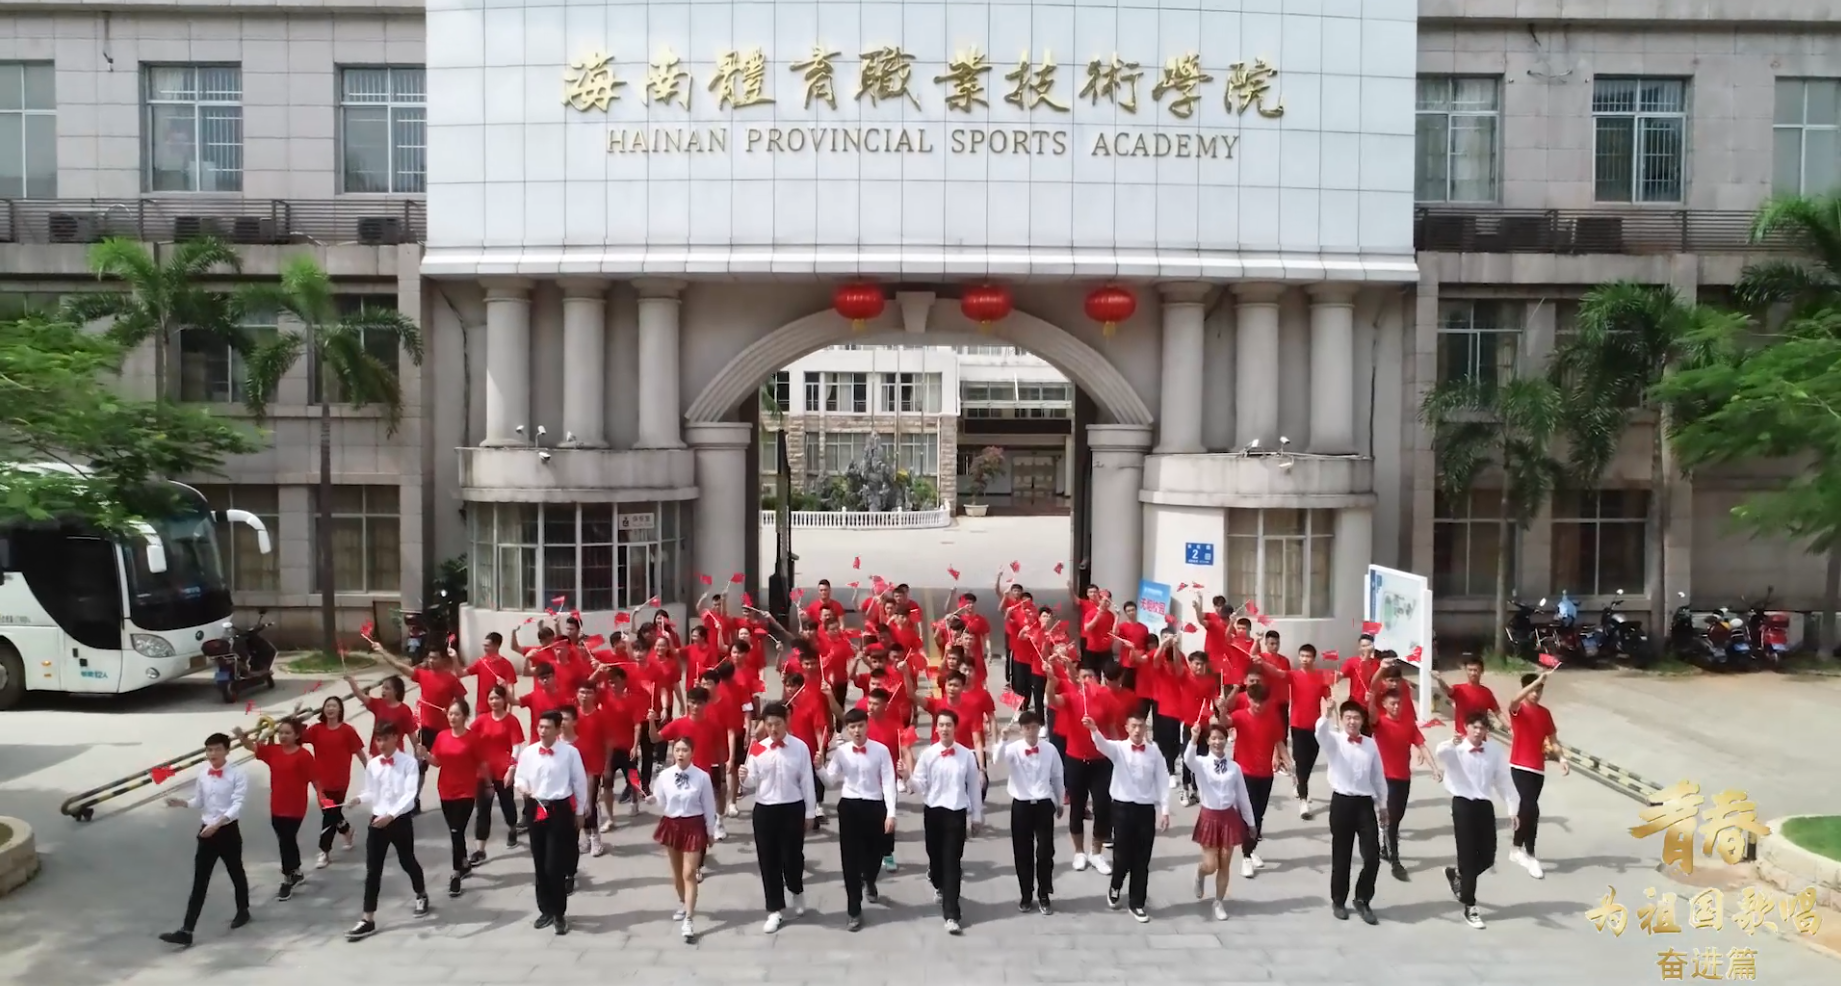 【视频】海南省体育职业技术学院七一献礼